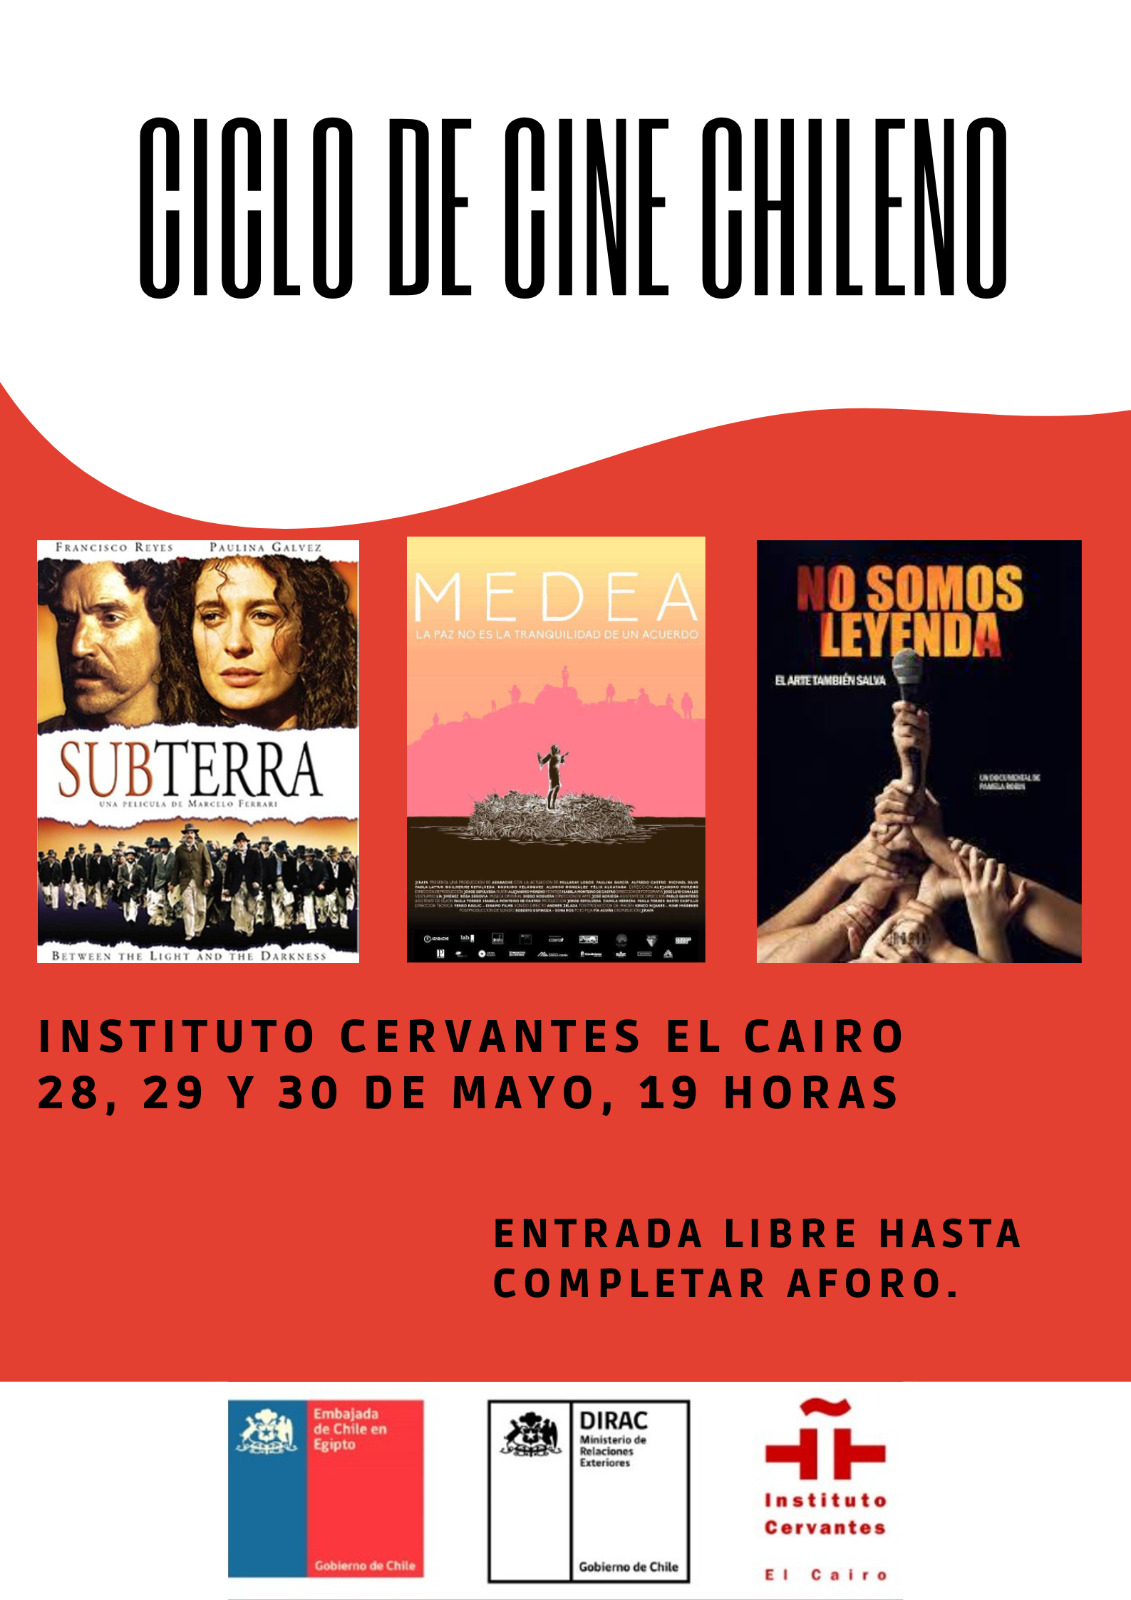 Ciclo de cine chileno